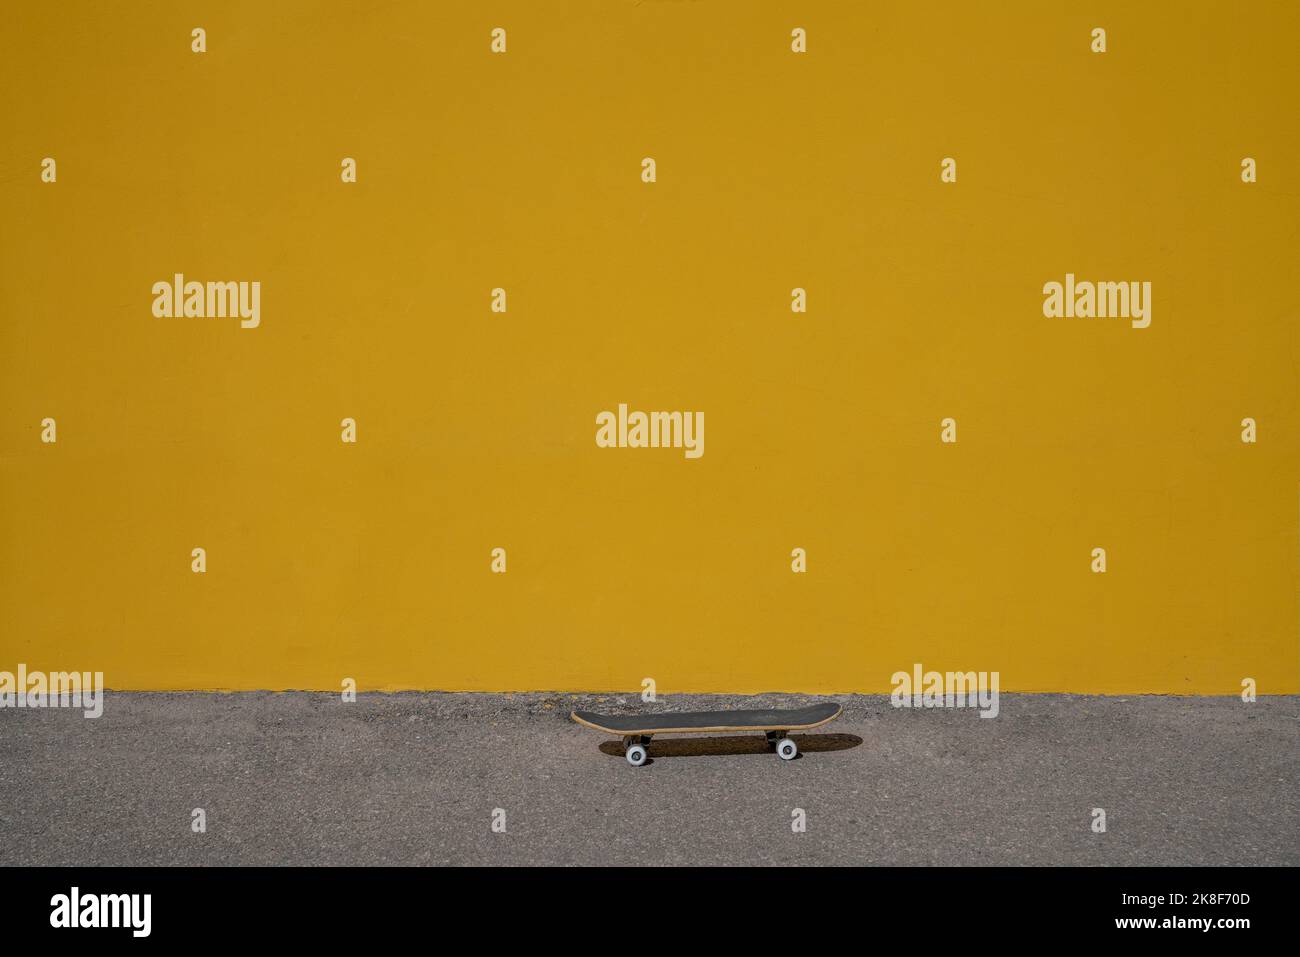 Planche à roulettes sur la piste de marche devant un mur jaune vif Banque D'Images